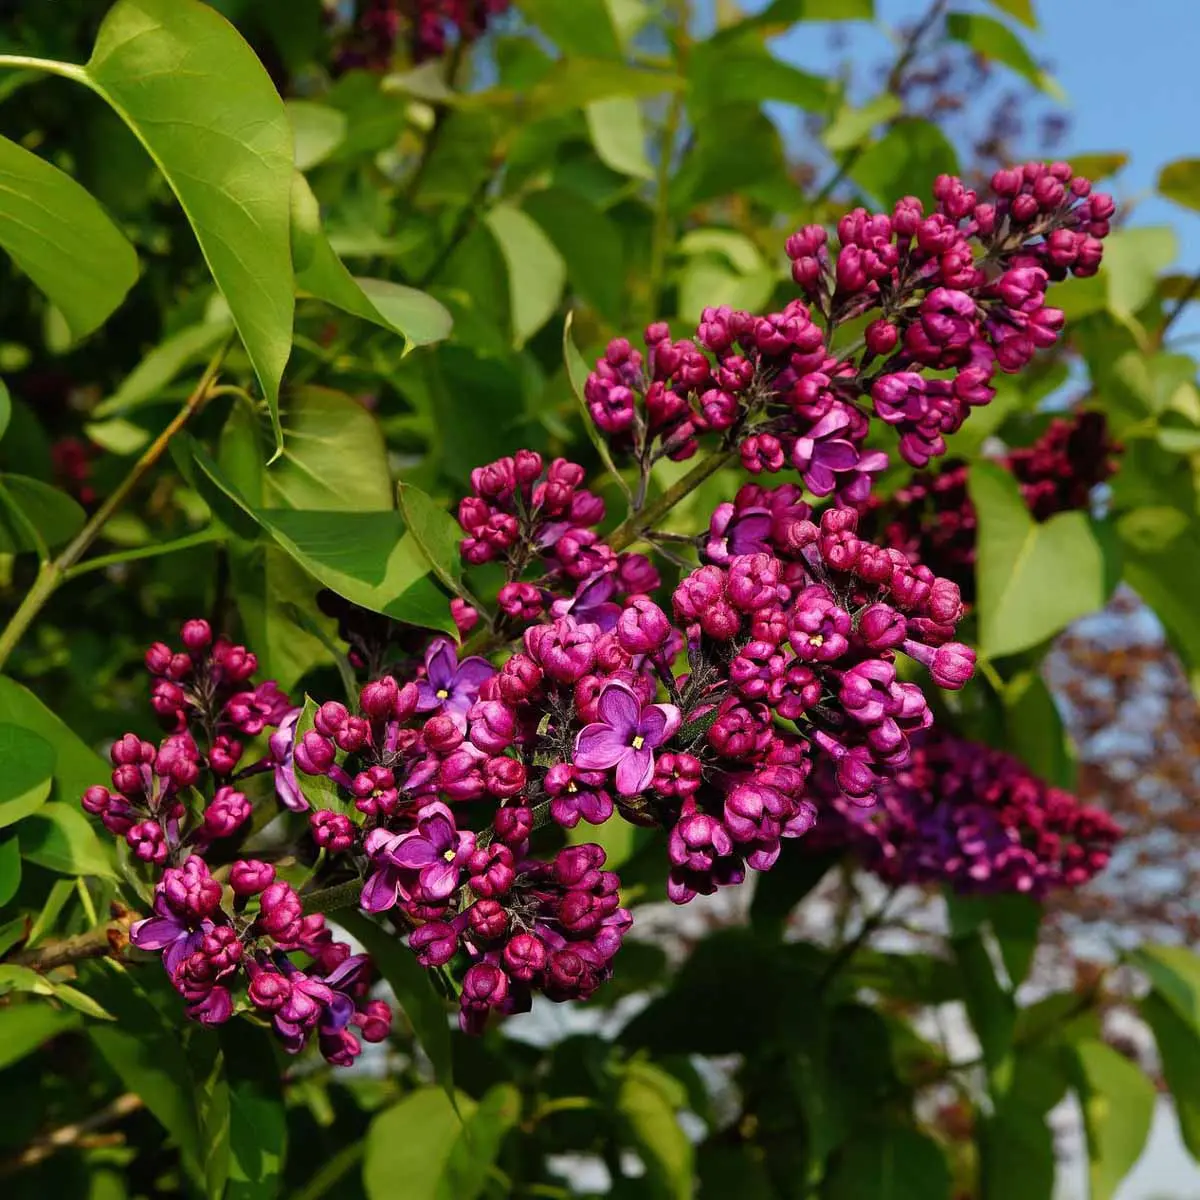 I fiori di lilla: colori e profumi irresistibili